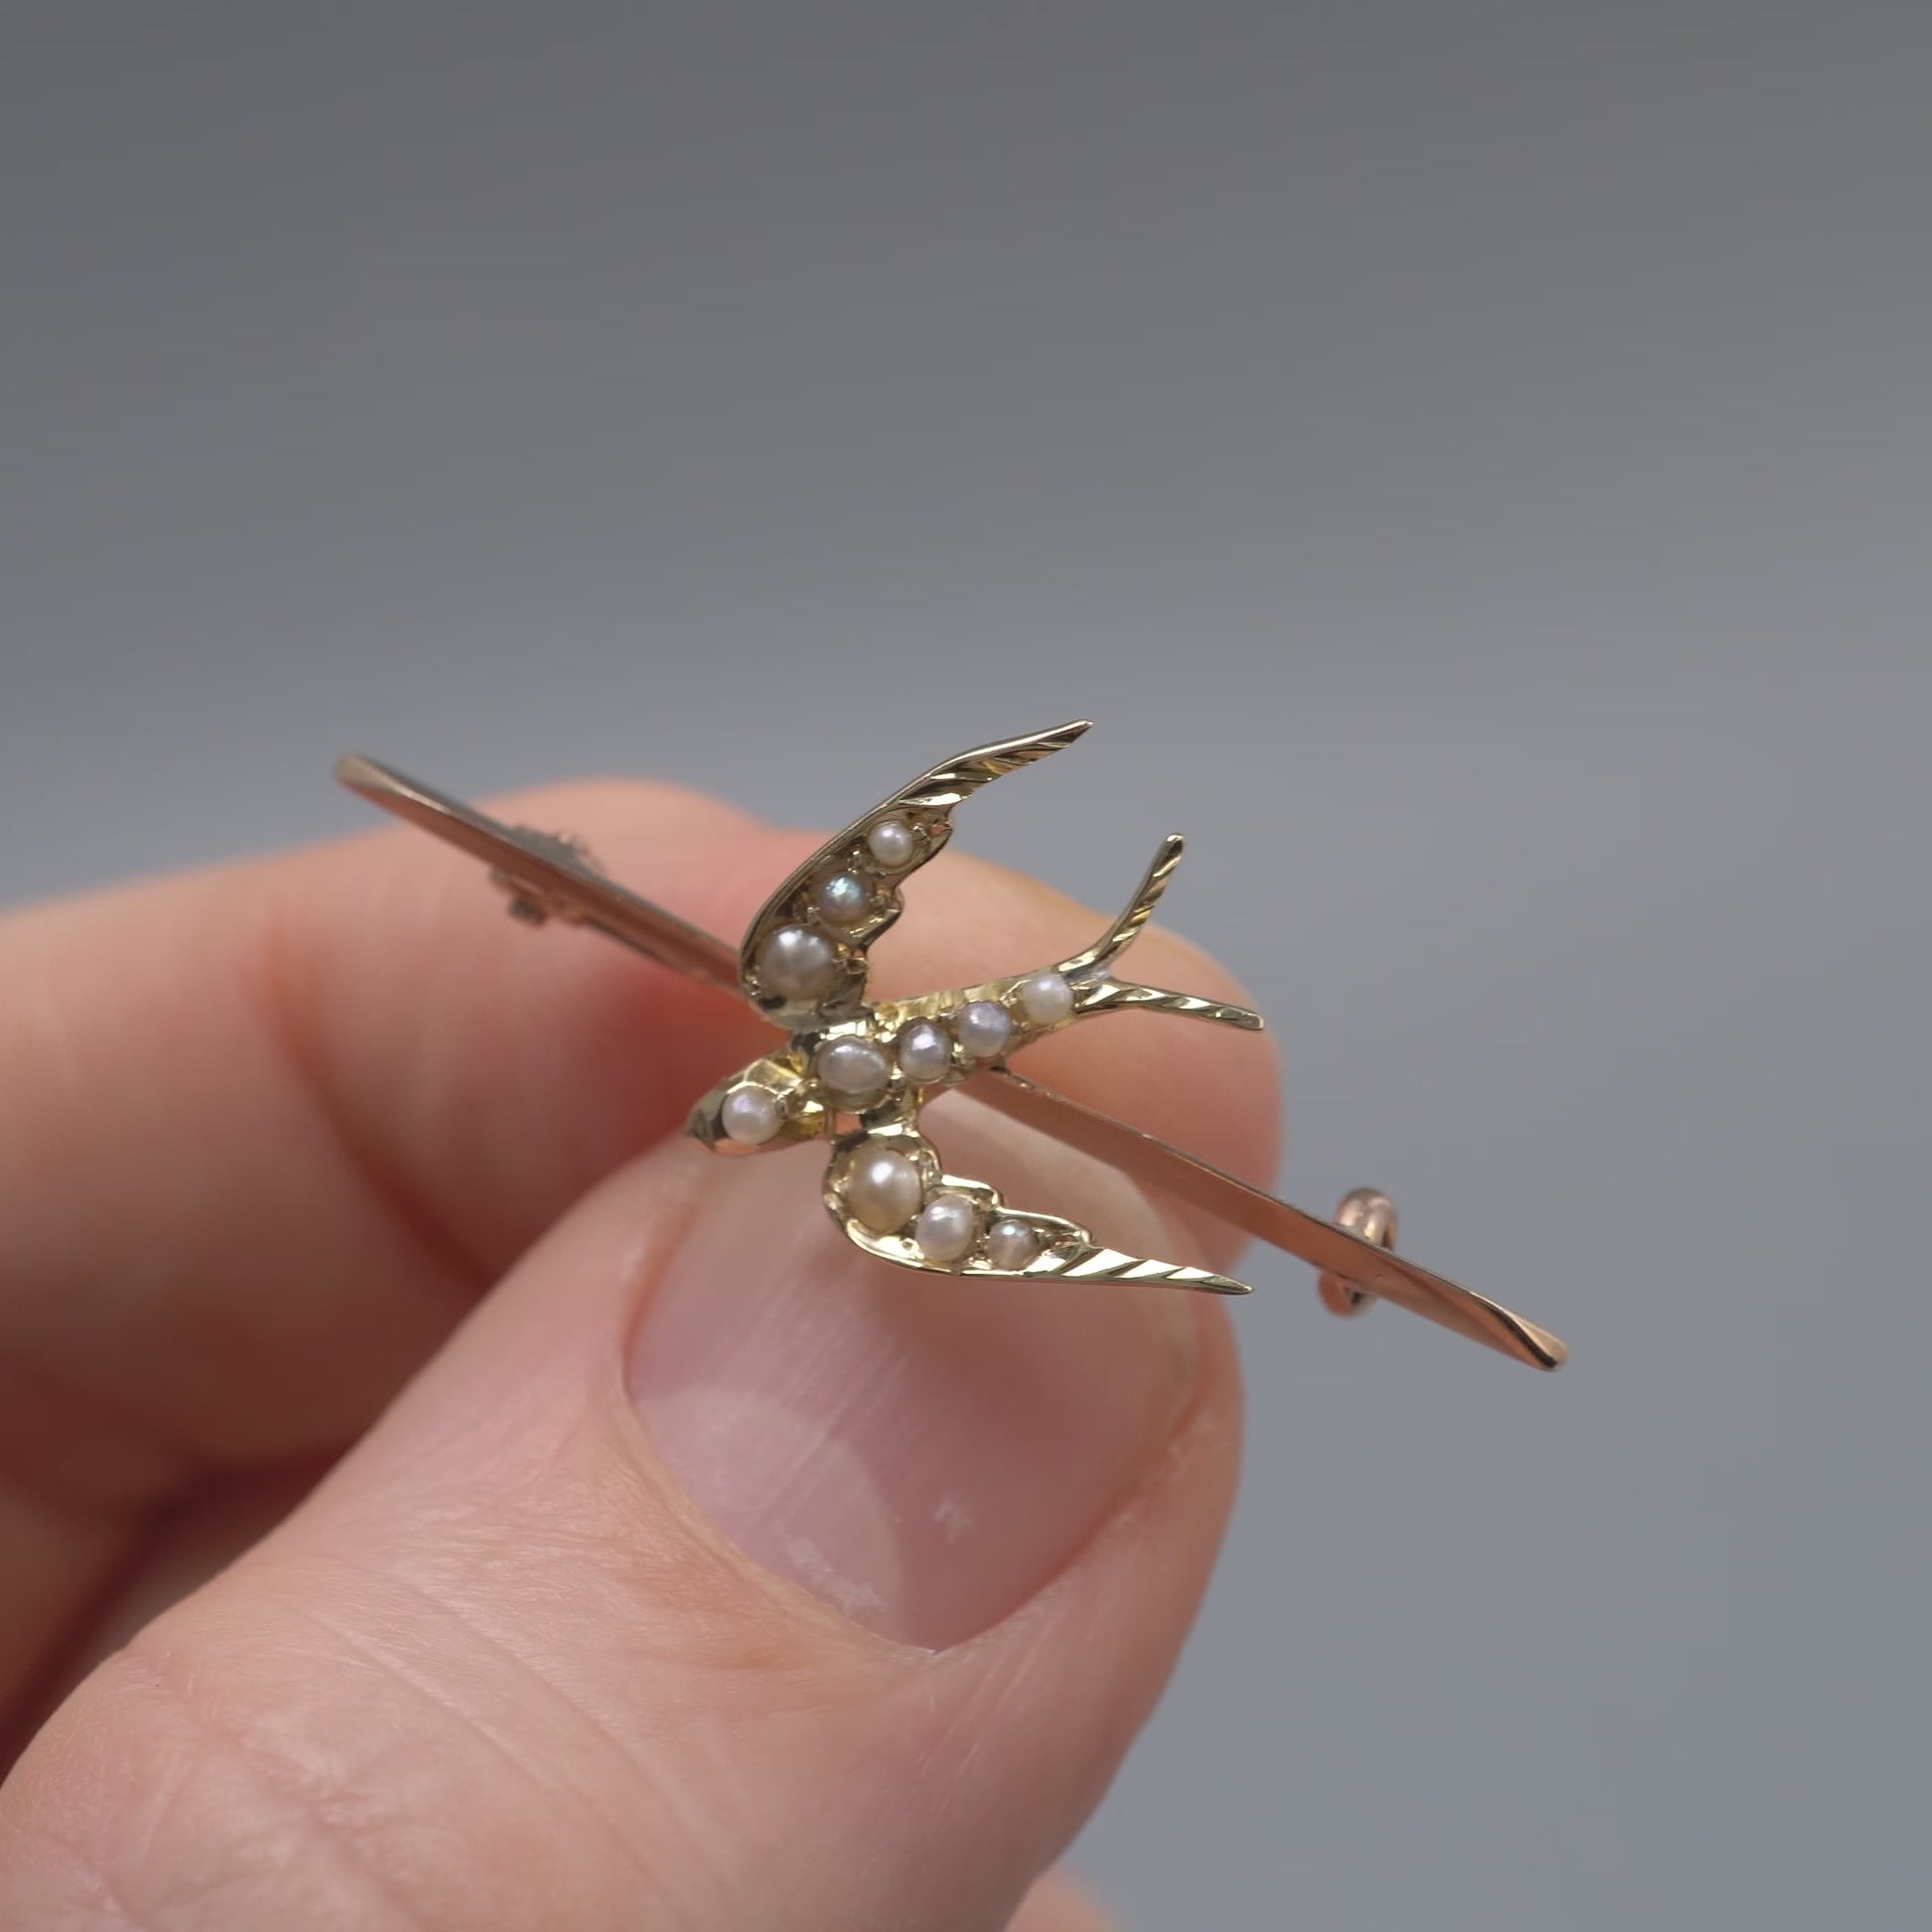 antique gold swallow bird brooch pin